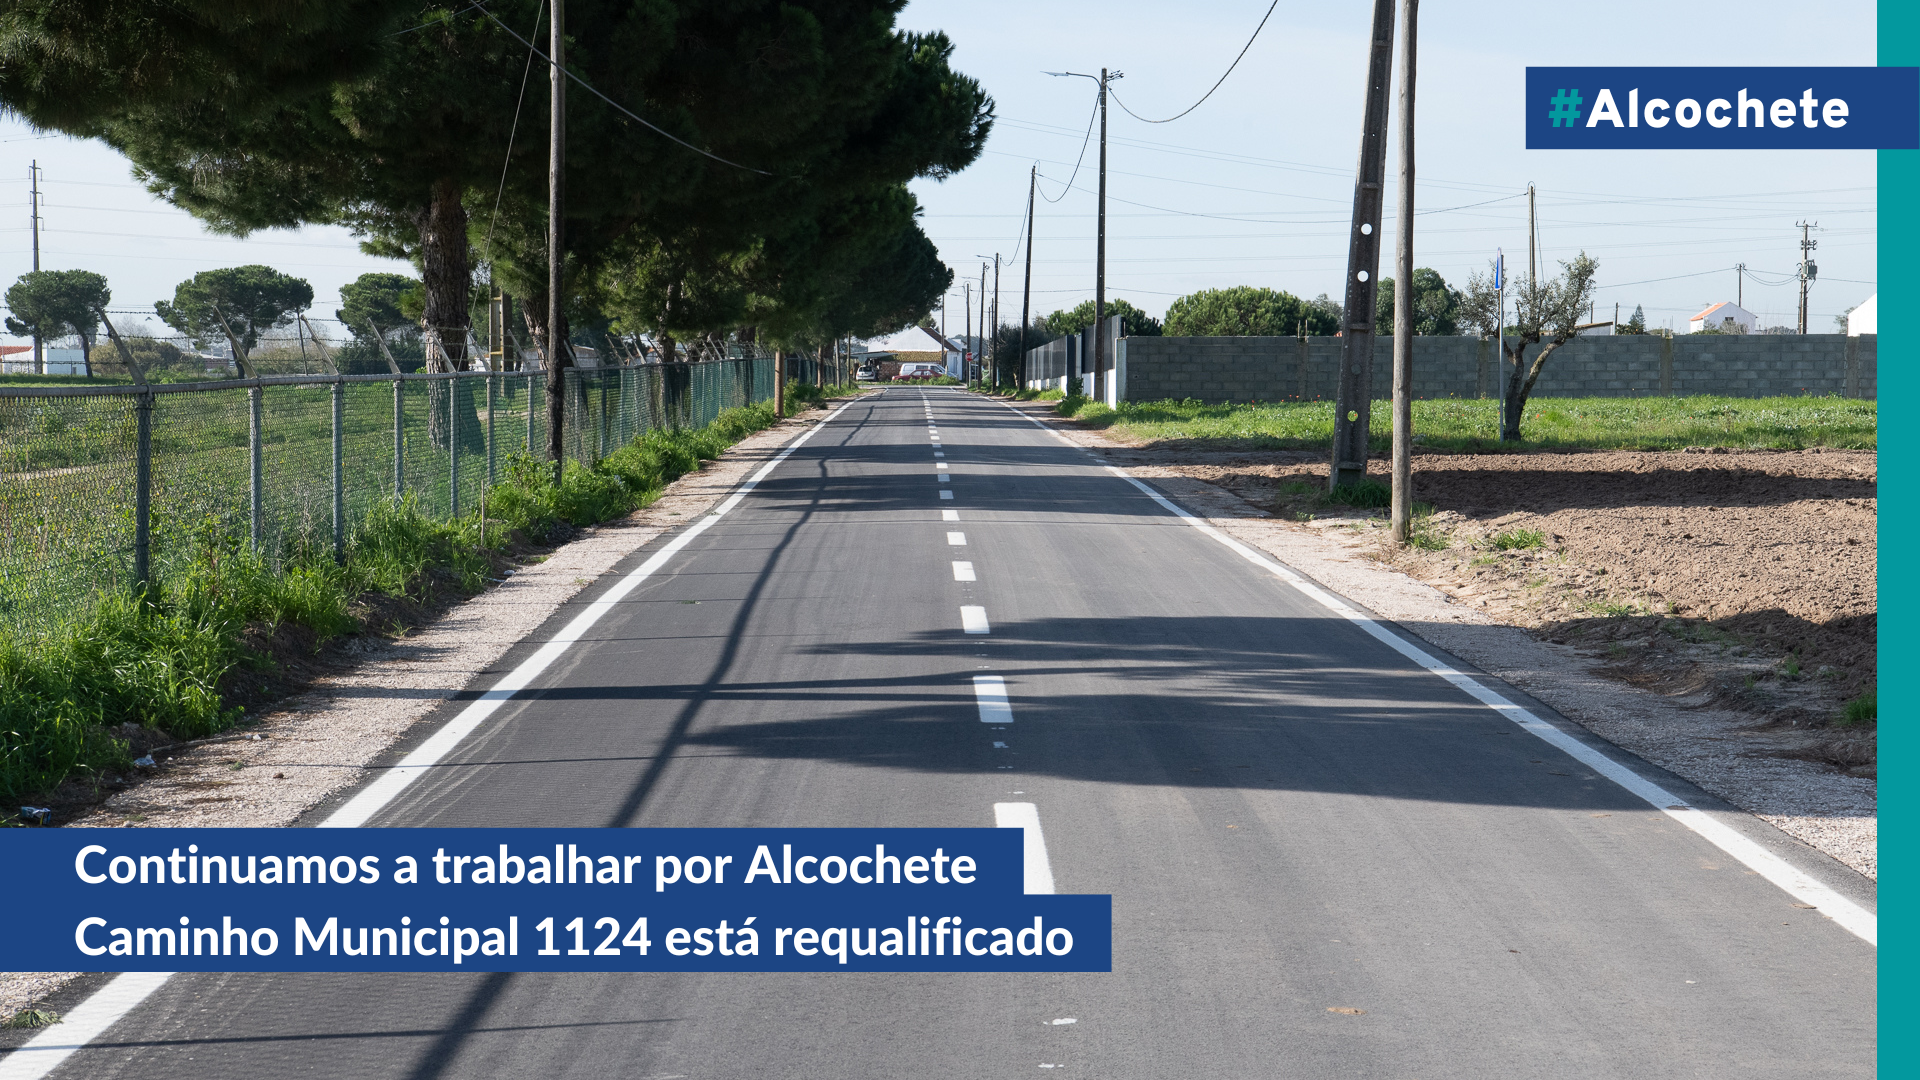 Continuamos a trabalhar por Alcochete: Caminho Municipal 1124 está requalificado